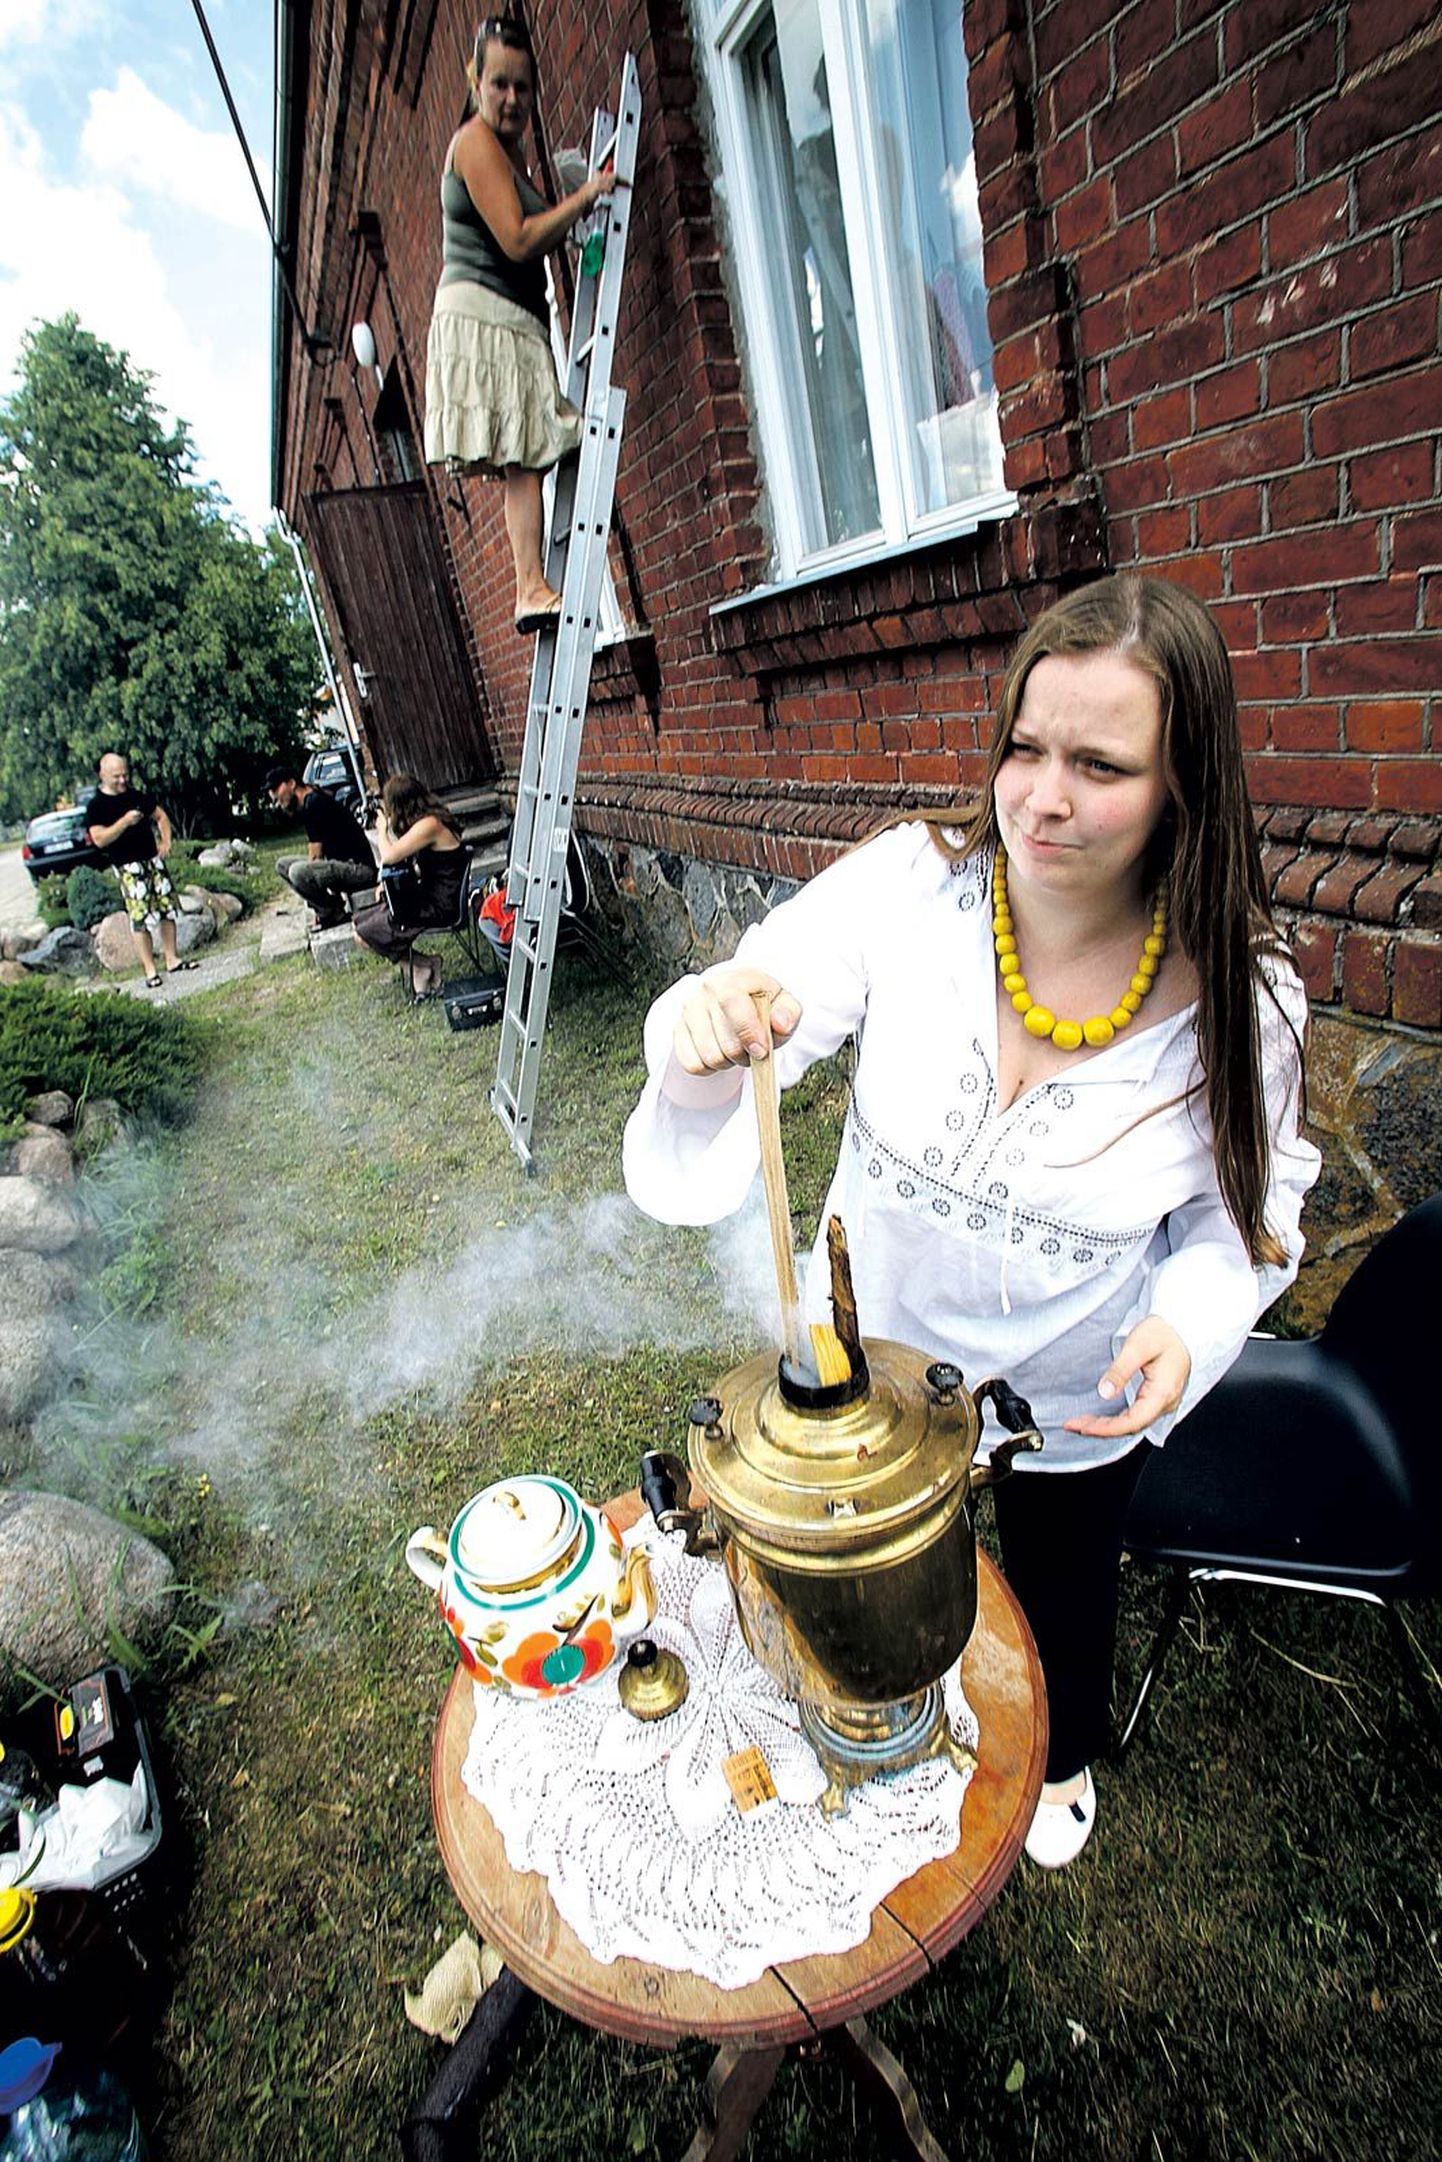 Käbid ajavad küll palju tossu, kuid kütavad samovari kiirelt kuumaks, õpetas Tiina Jurjeva, kelle peres tehakse samovariga peaaegu iga nädal teed.